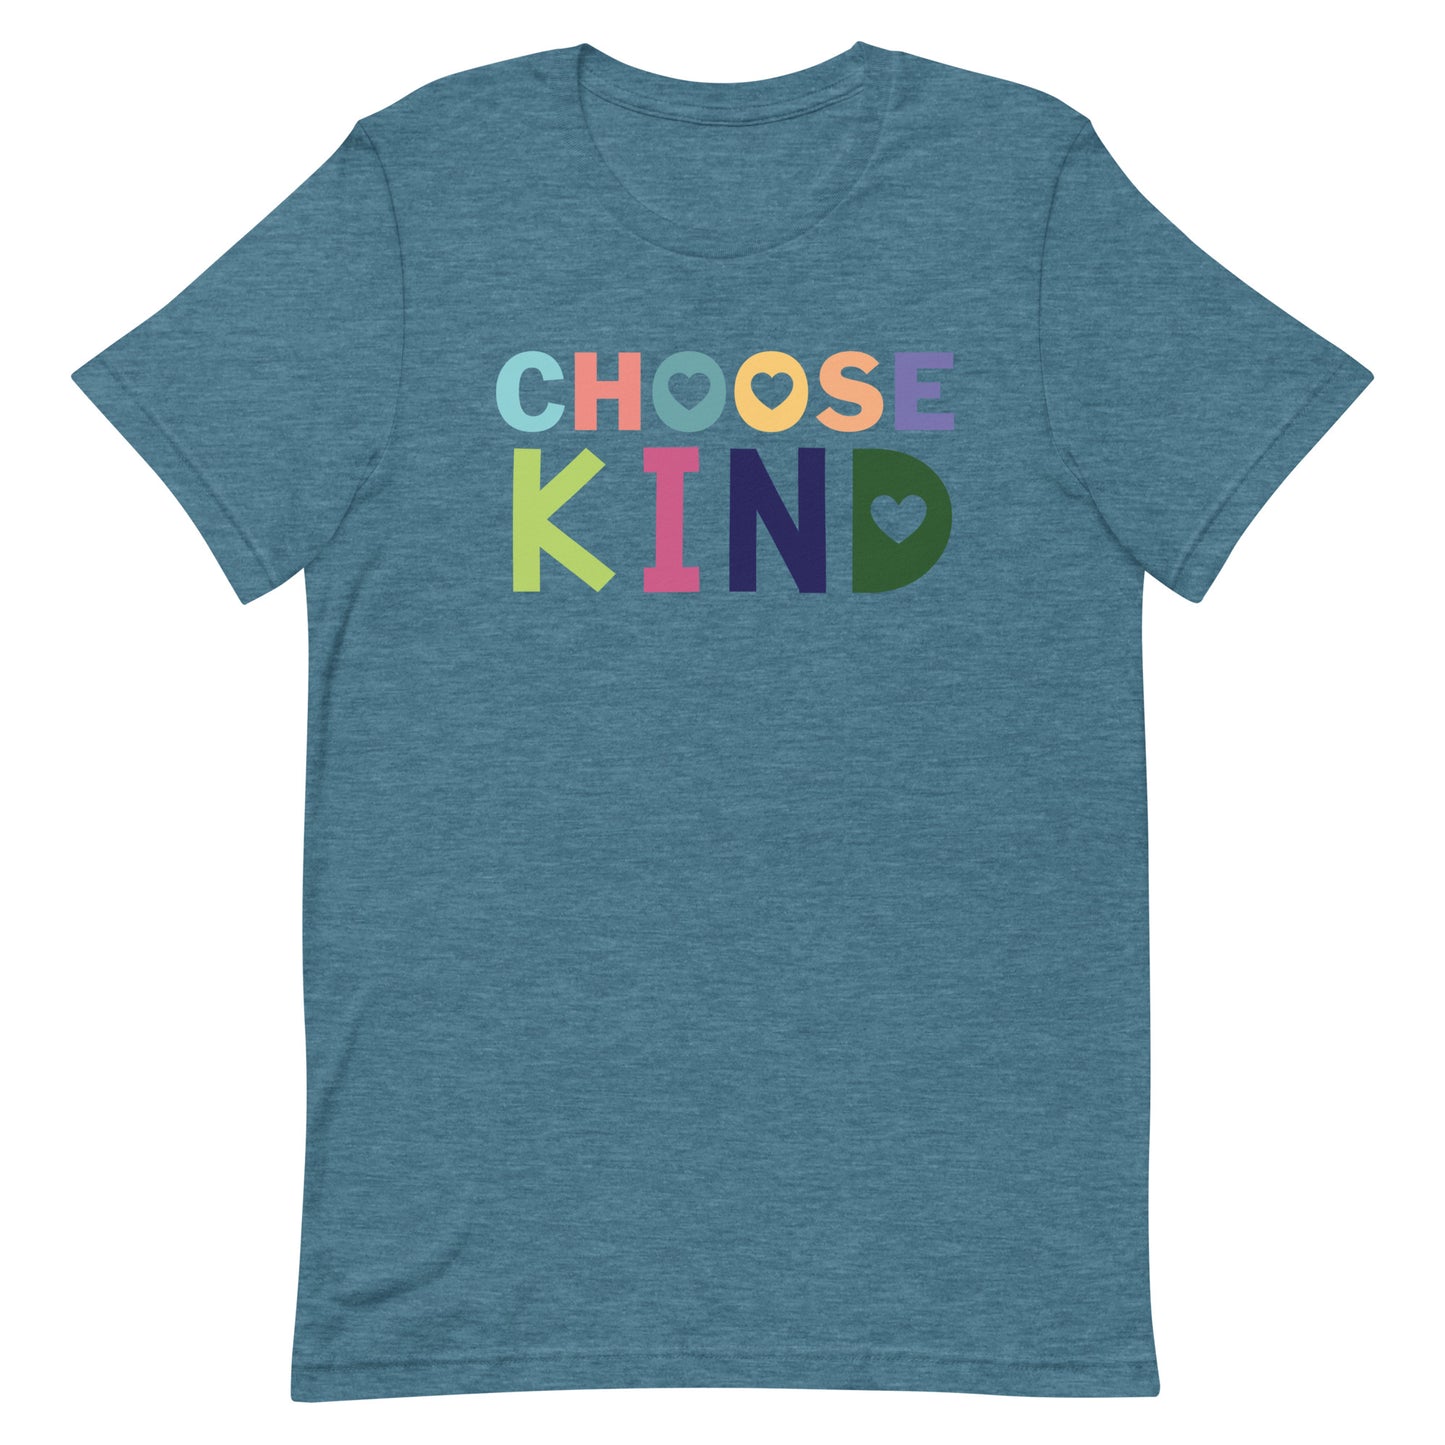 Choose Kind, Kindness Tshirt , Teacher Tshirt, Teacher Shirt, Super-soft Unisex t-shirt, Teacher Appreciation Gift